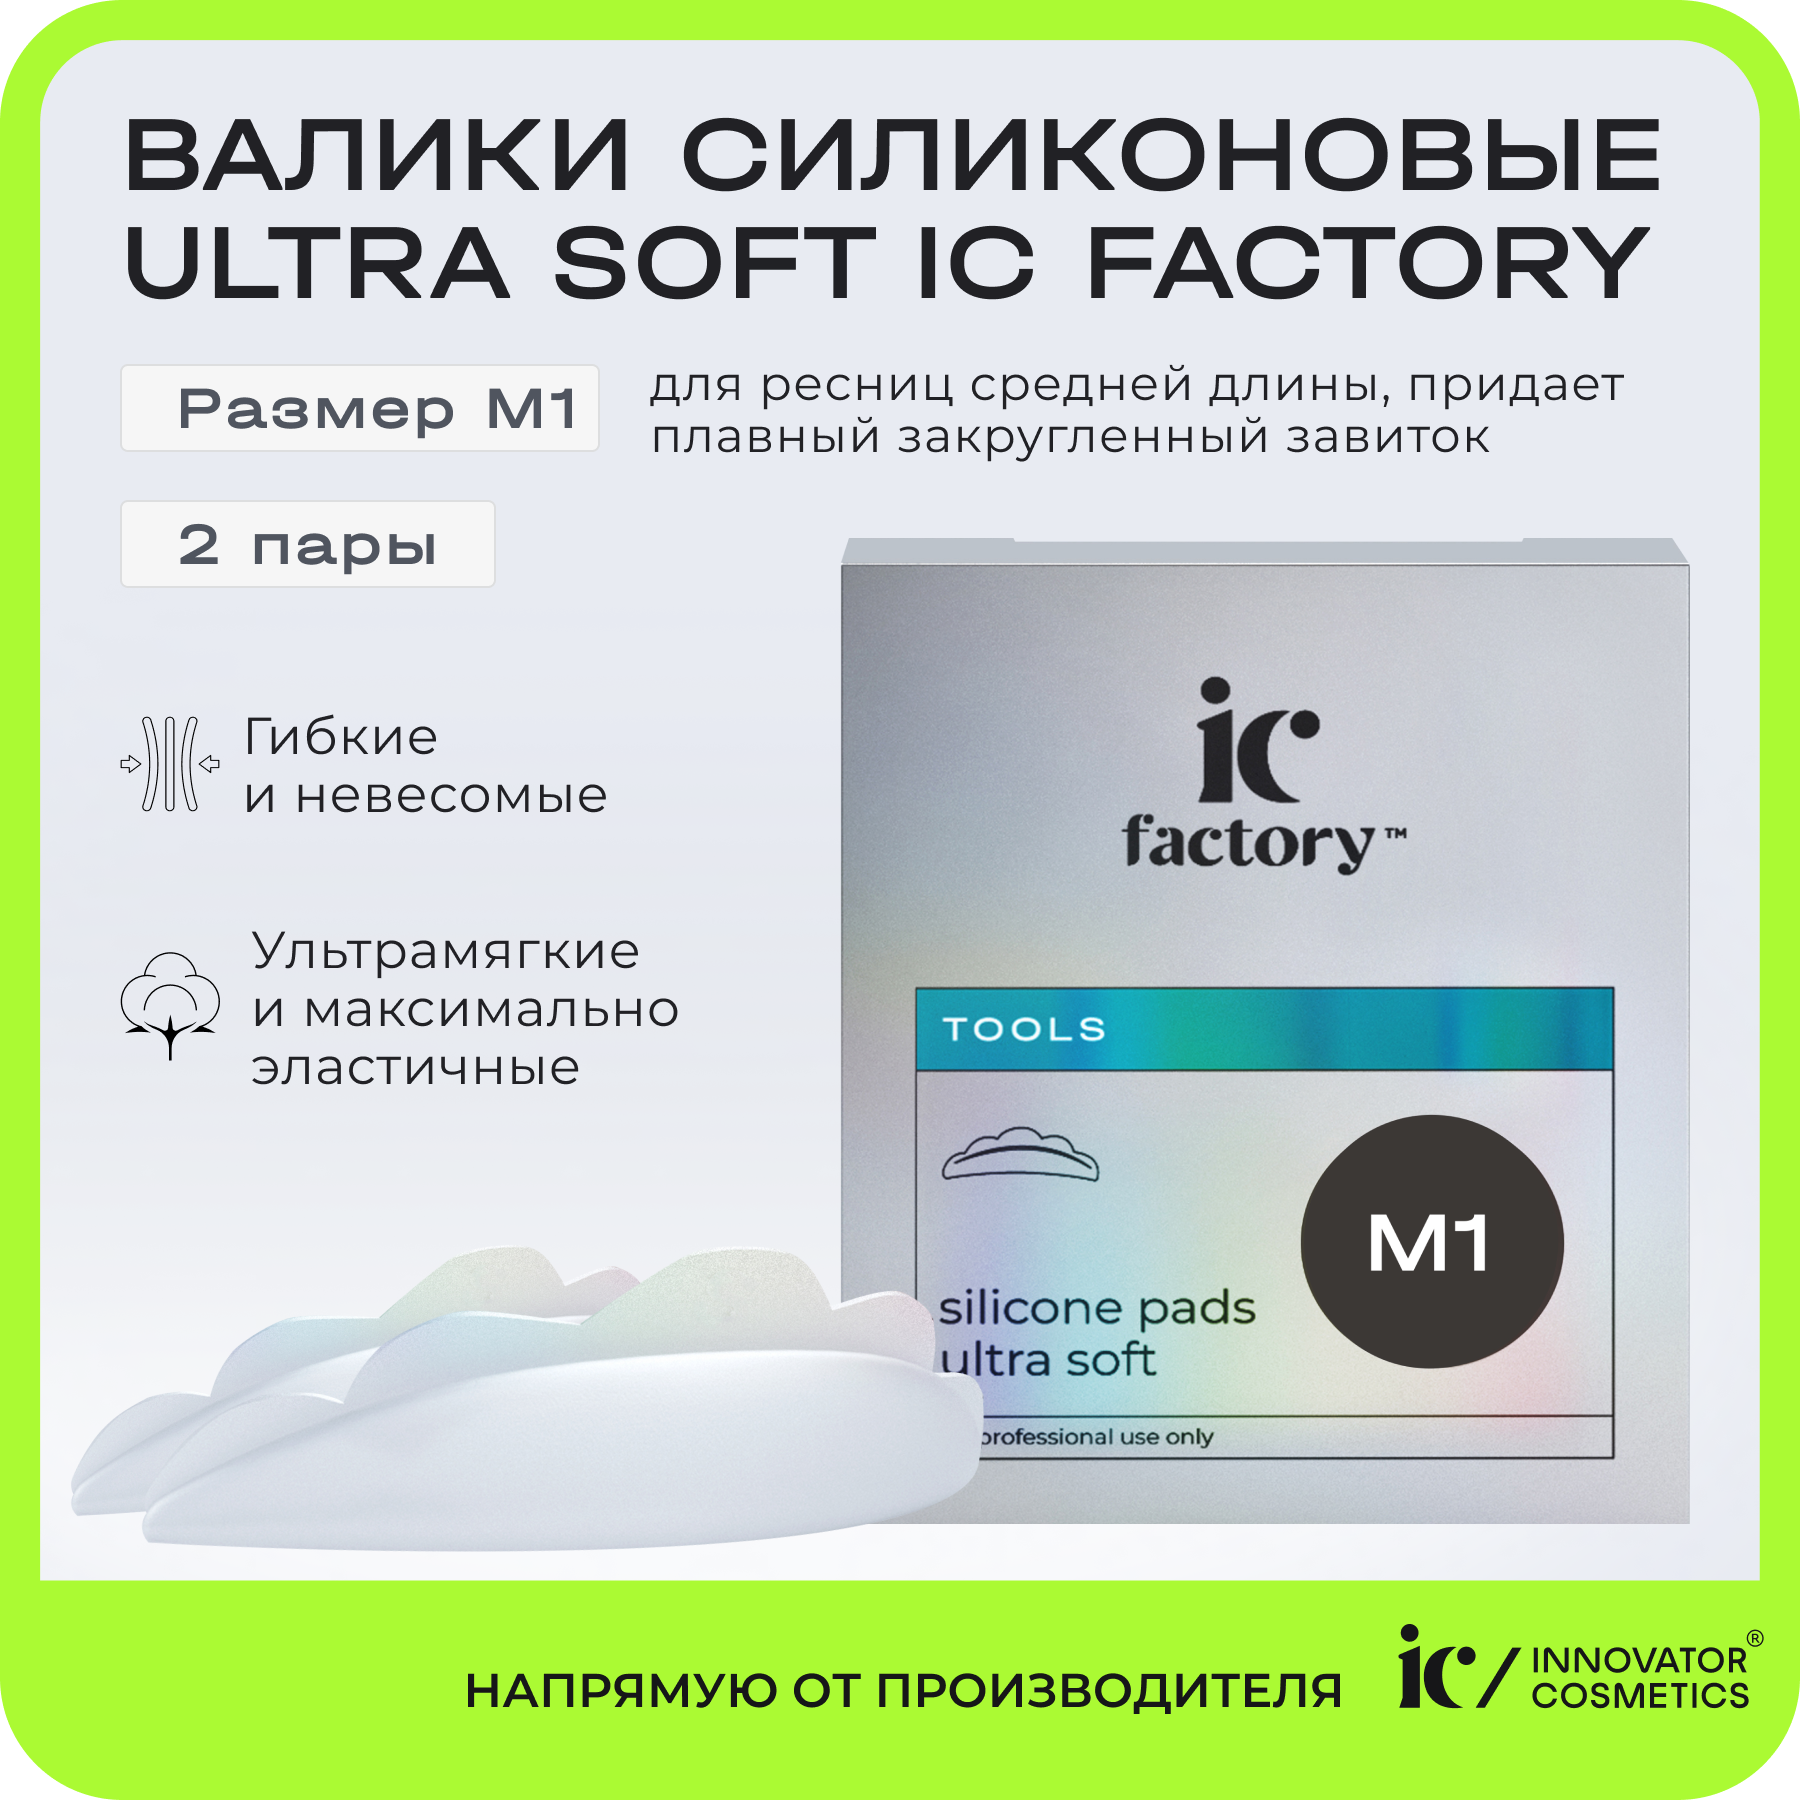 Валики силиконовые Innovator Cosmetics Ultra Soft размер M1 IC FACTORY, 2 пары innovator cosmetics валики силиконовые размер m1 ultra soft ic factory 2 пары